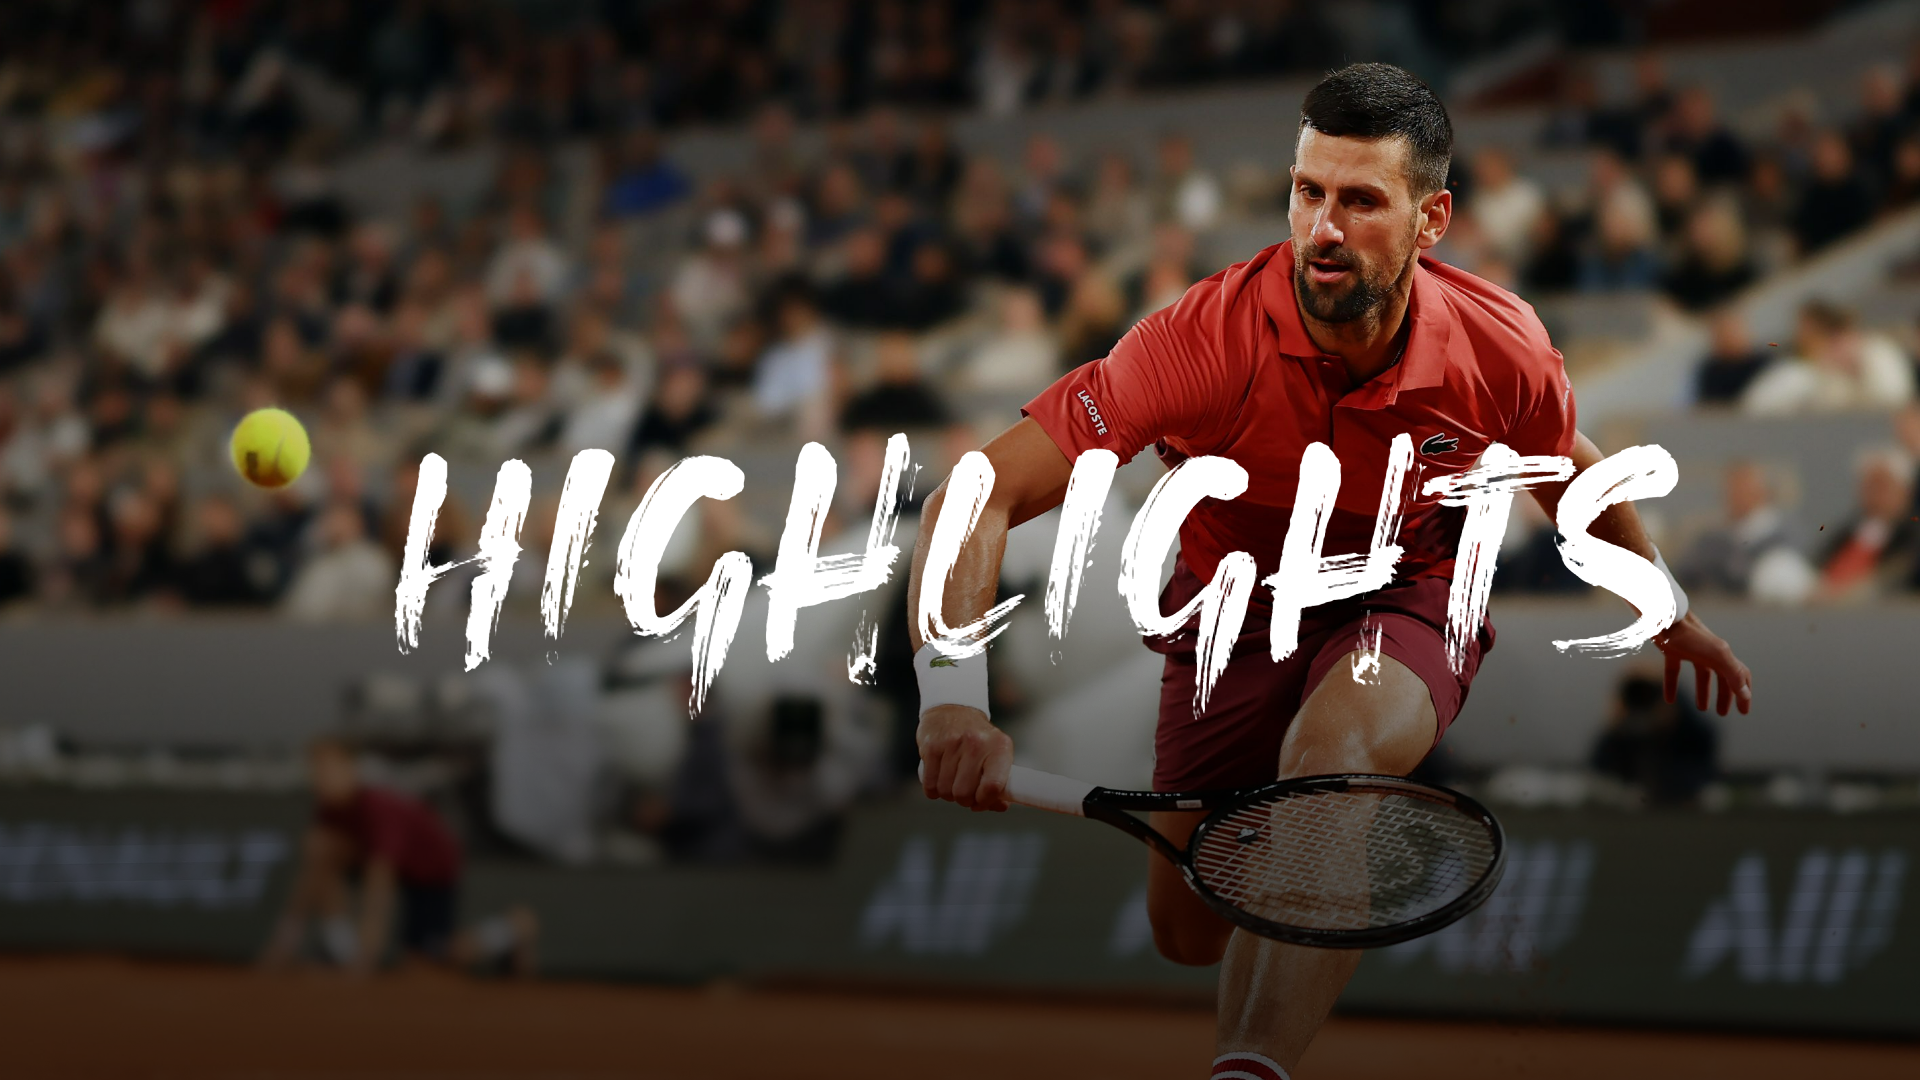 French Open, 3. Runde: Djokovic entkommt Aus gegen Musetti tief in der Nacht - Highlights